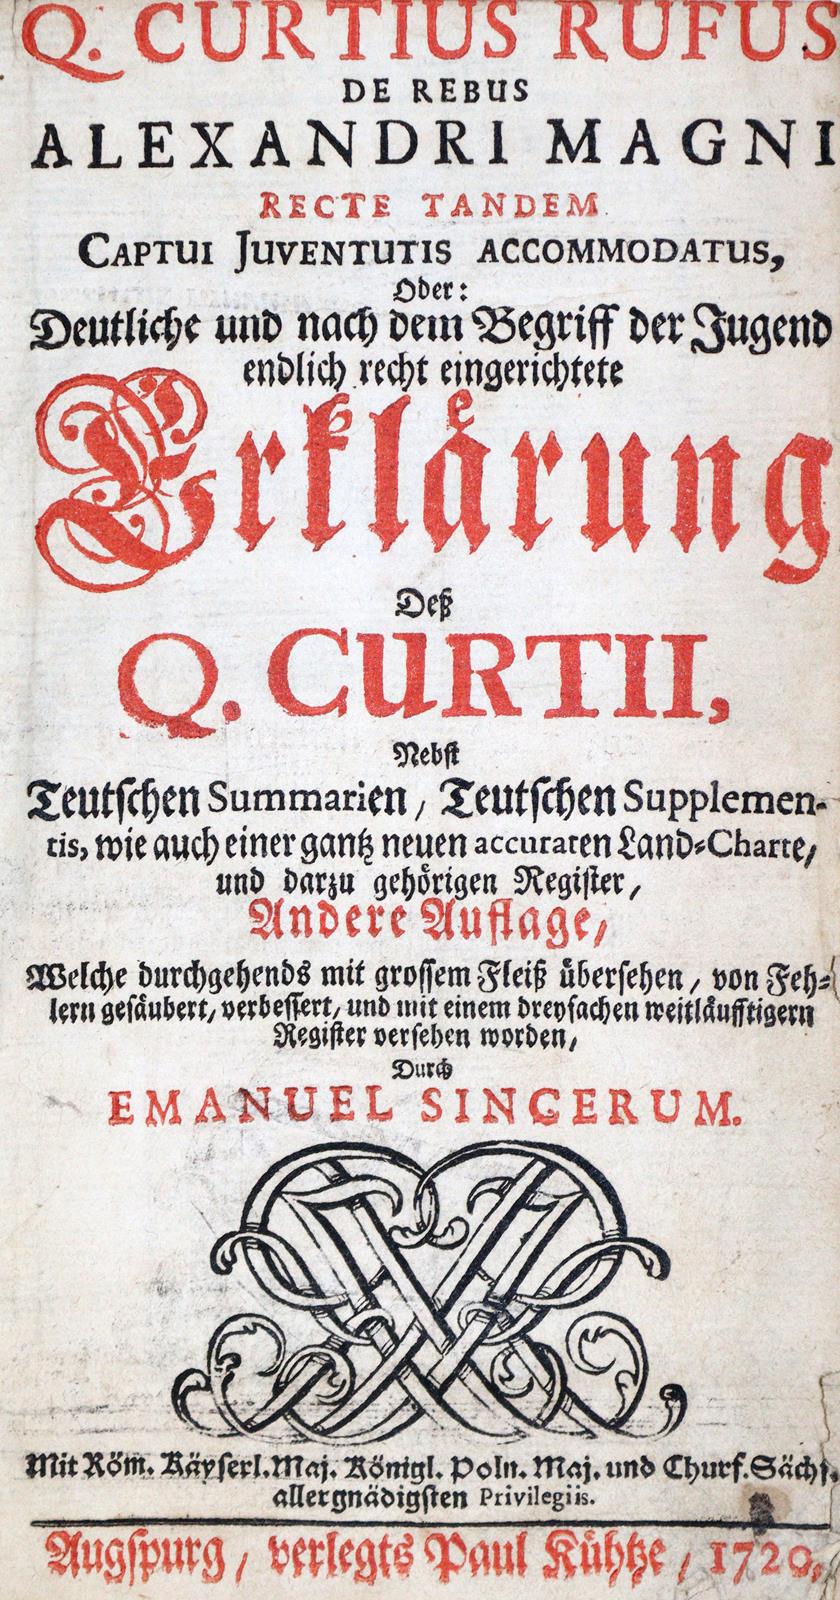 Curtius Rufus,Q. | Bild Nr.1